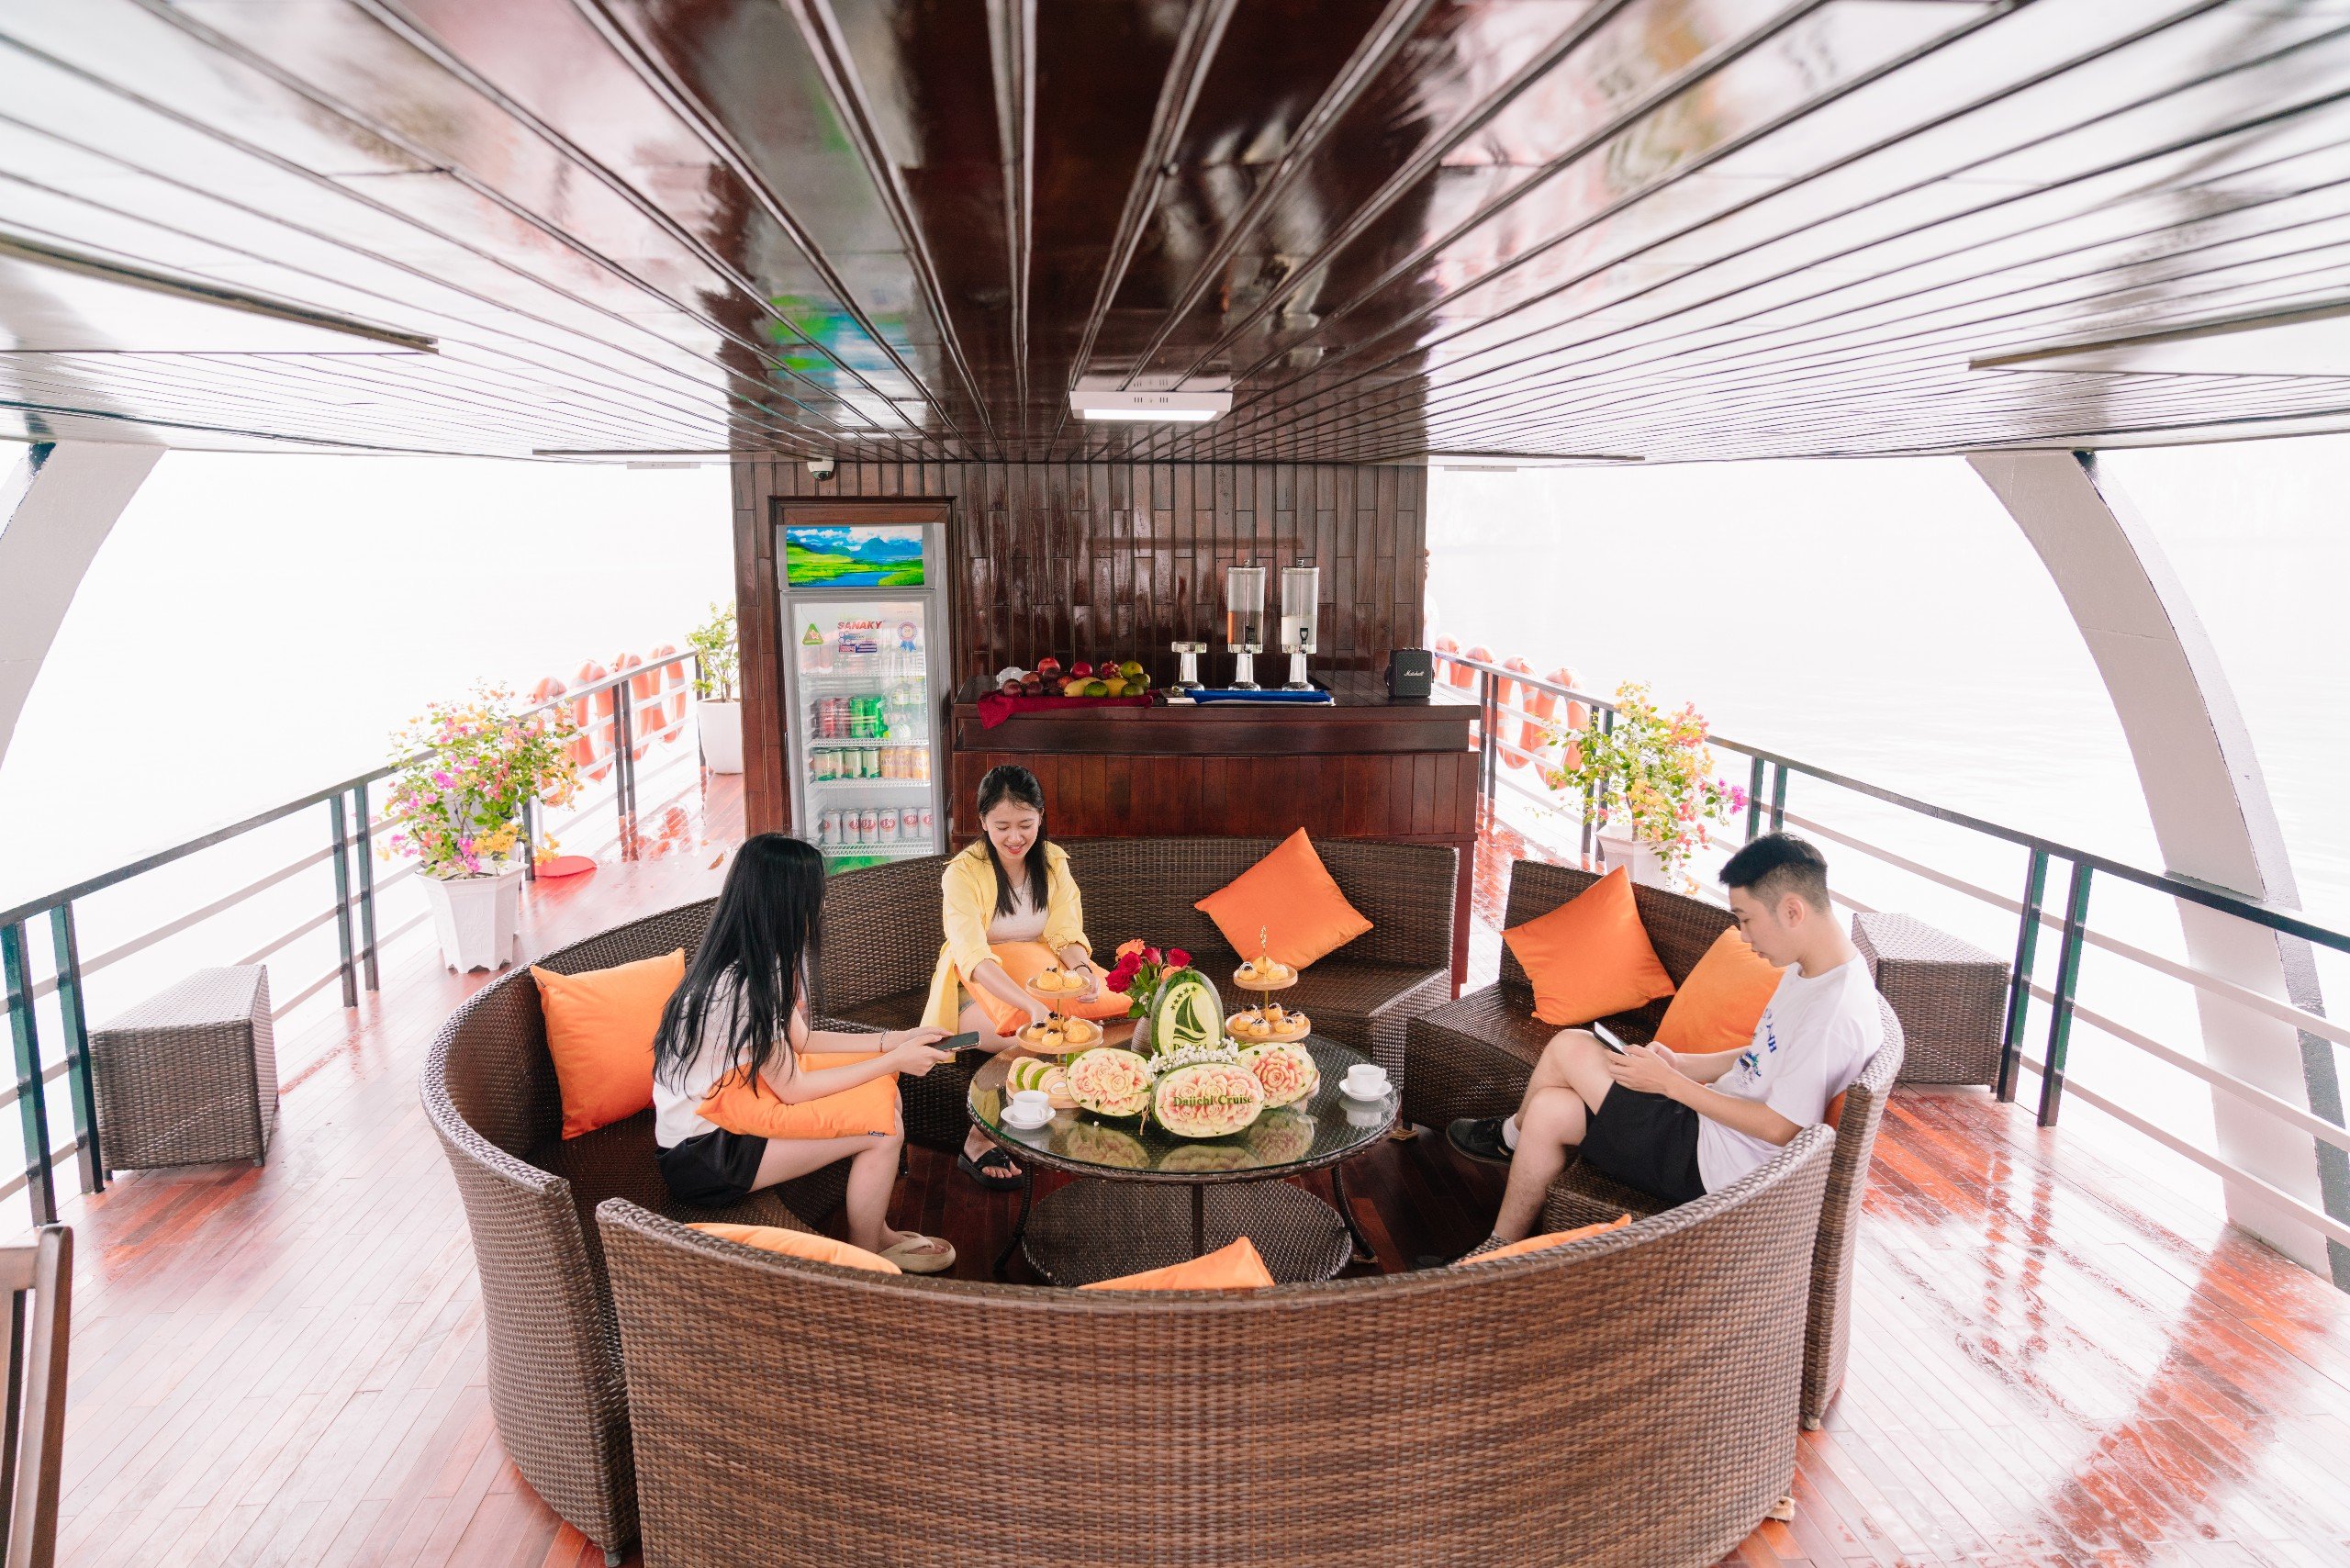 Combo Cát Bà xe khứ hồi + tour  1 ngày vịnh Lan Hạ du thuyền Daiichi Cruise